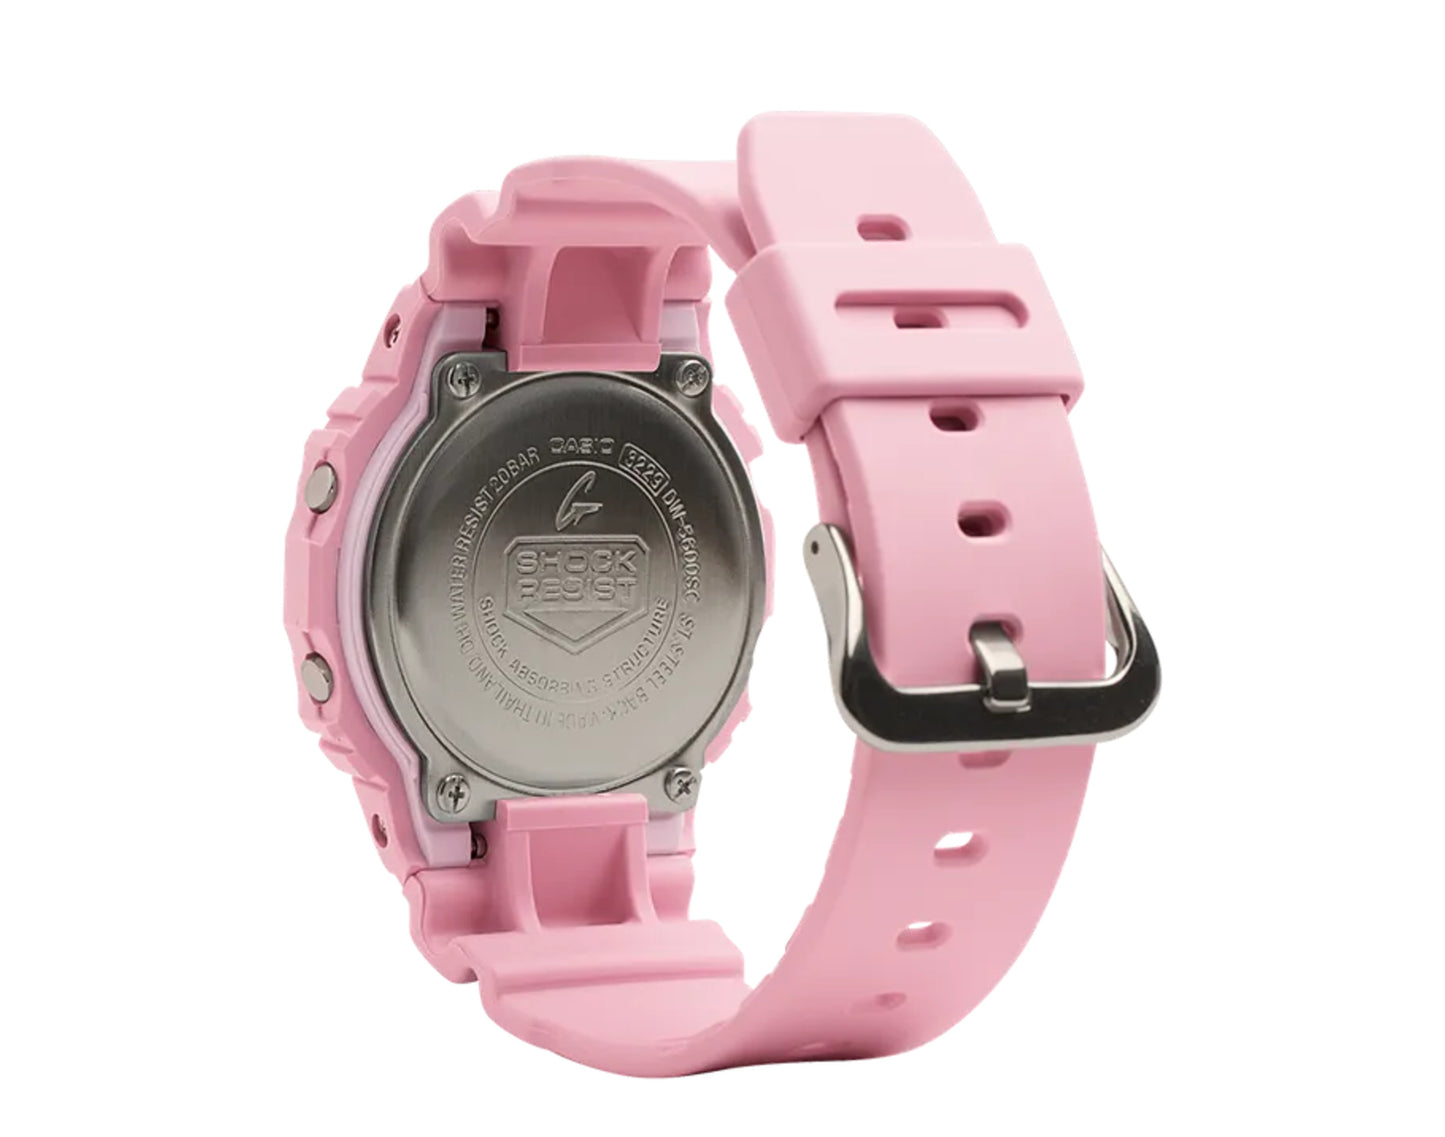 Casio G-Shock DW5600SC Digital Resin Watch